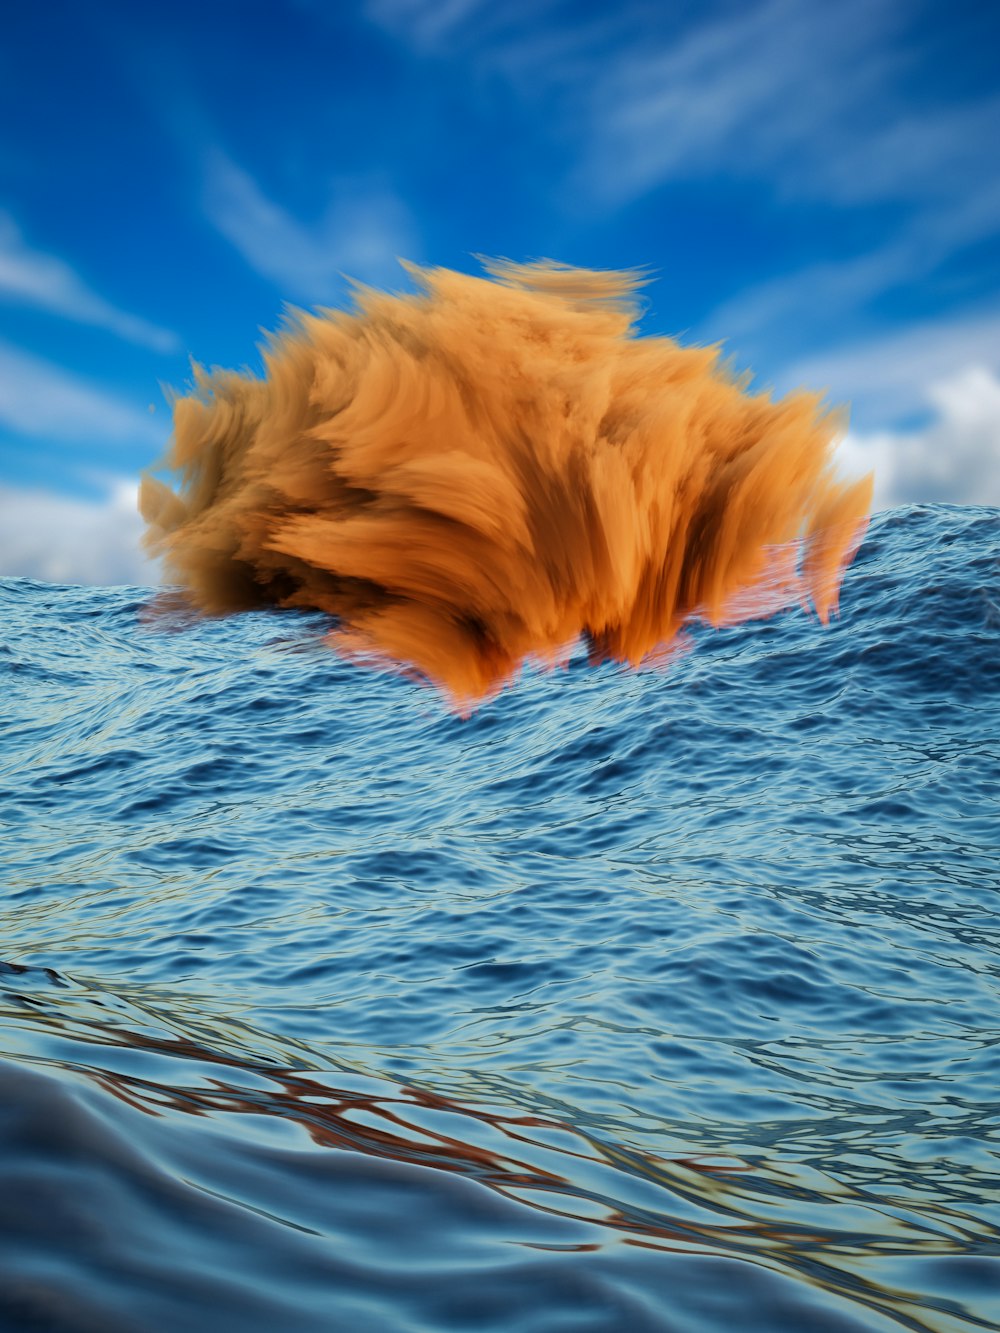 Un perro nadando en el agua